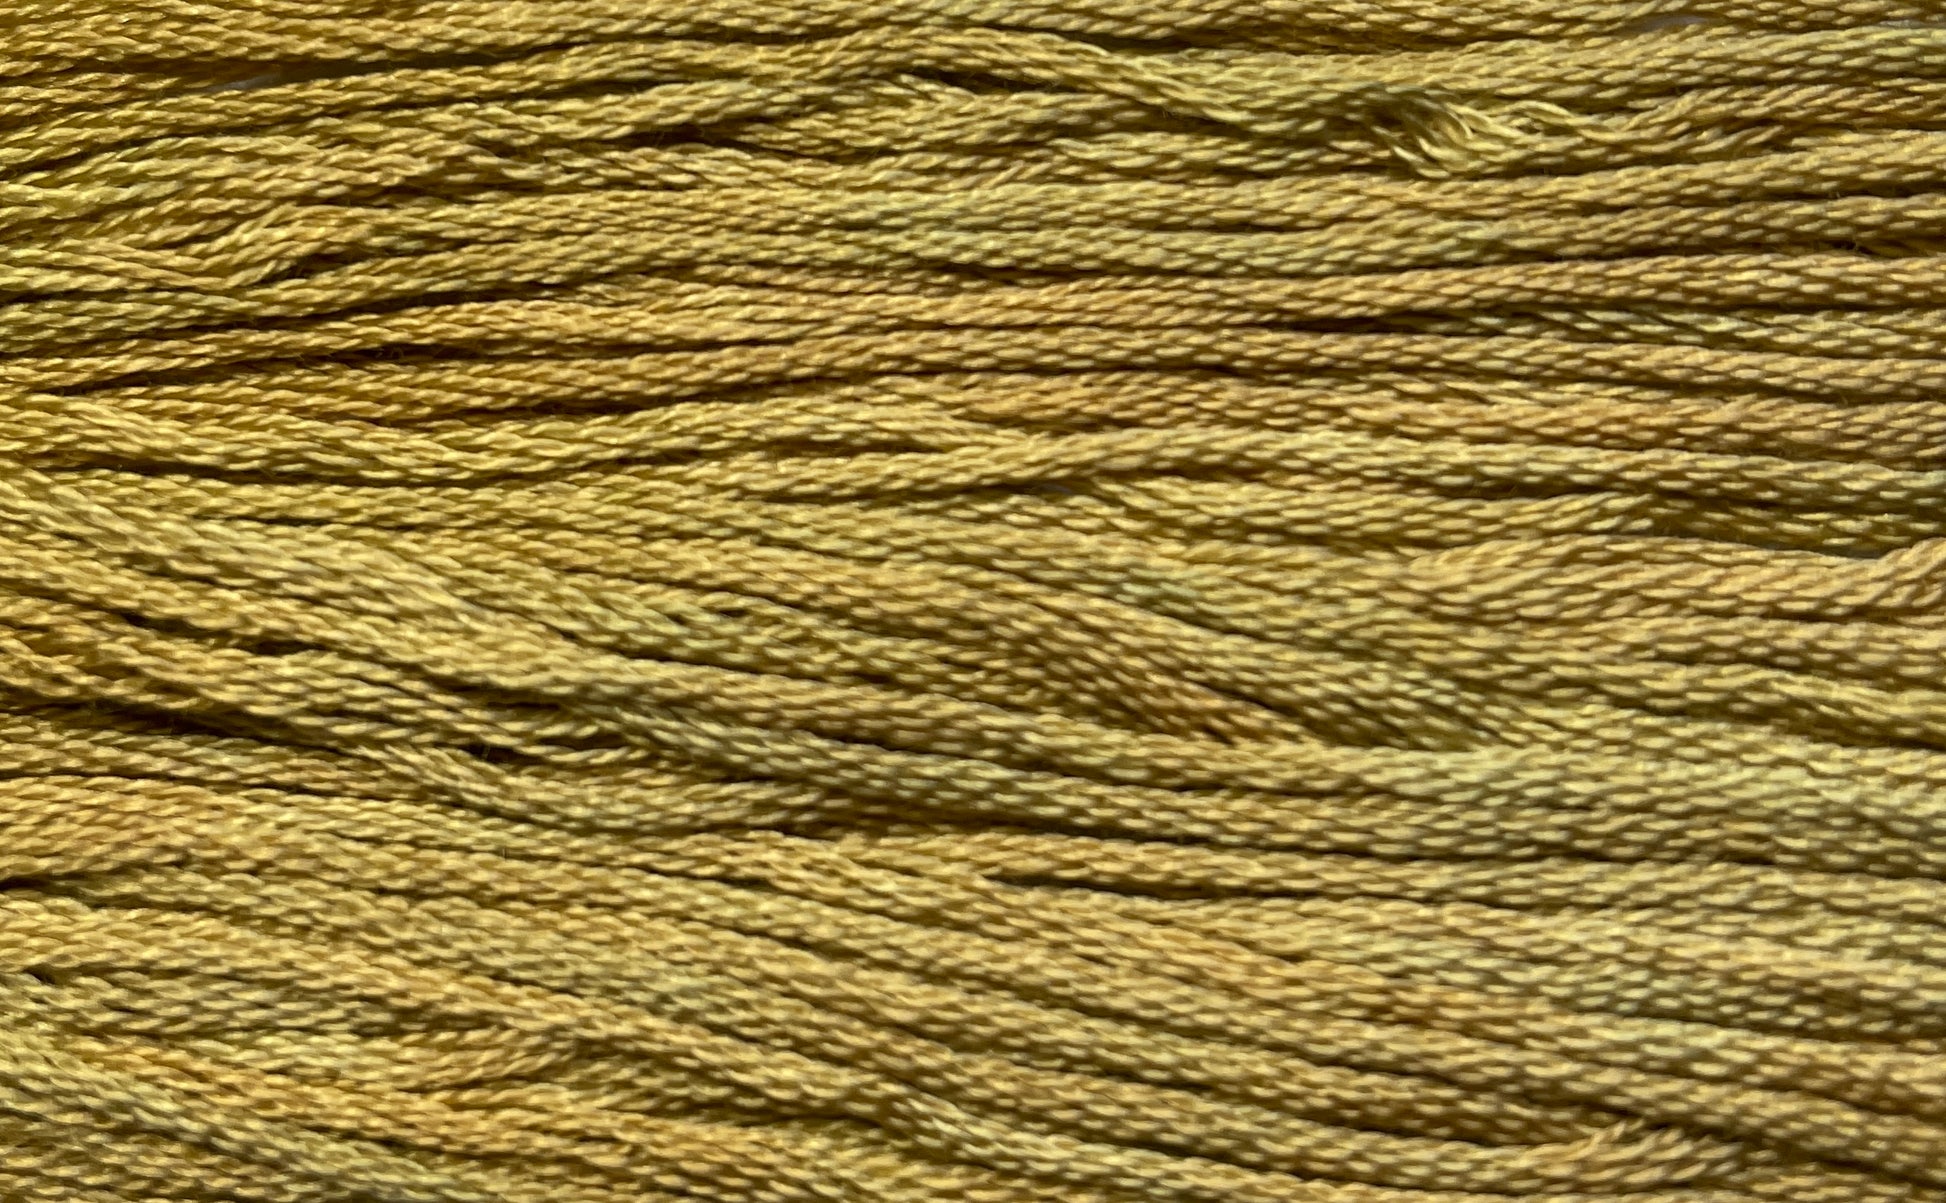 Harvest Basket - Gentle Arts Cotton Thread - 5 yard Skein - Cross Stitch Floss, Thread & Floss, Thread & Floss, The Crafty Grimalkin - A Cross Stitch Store